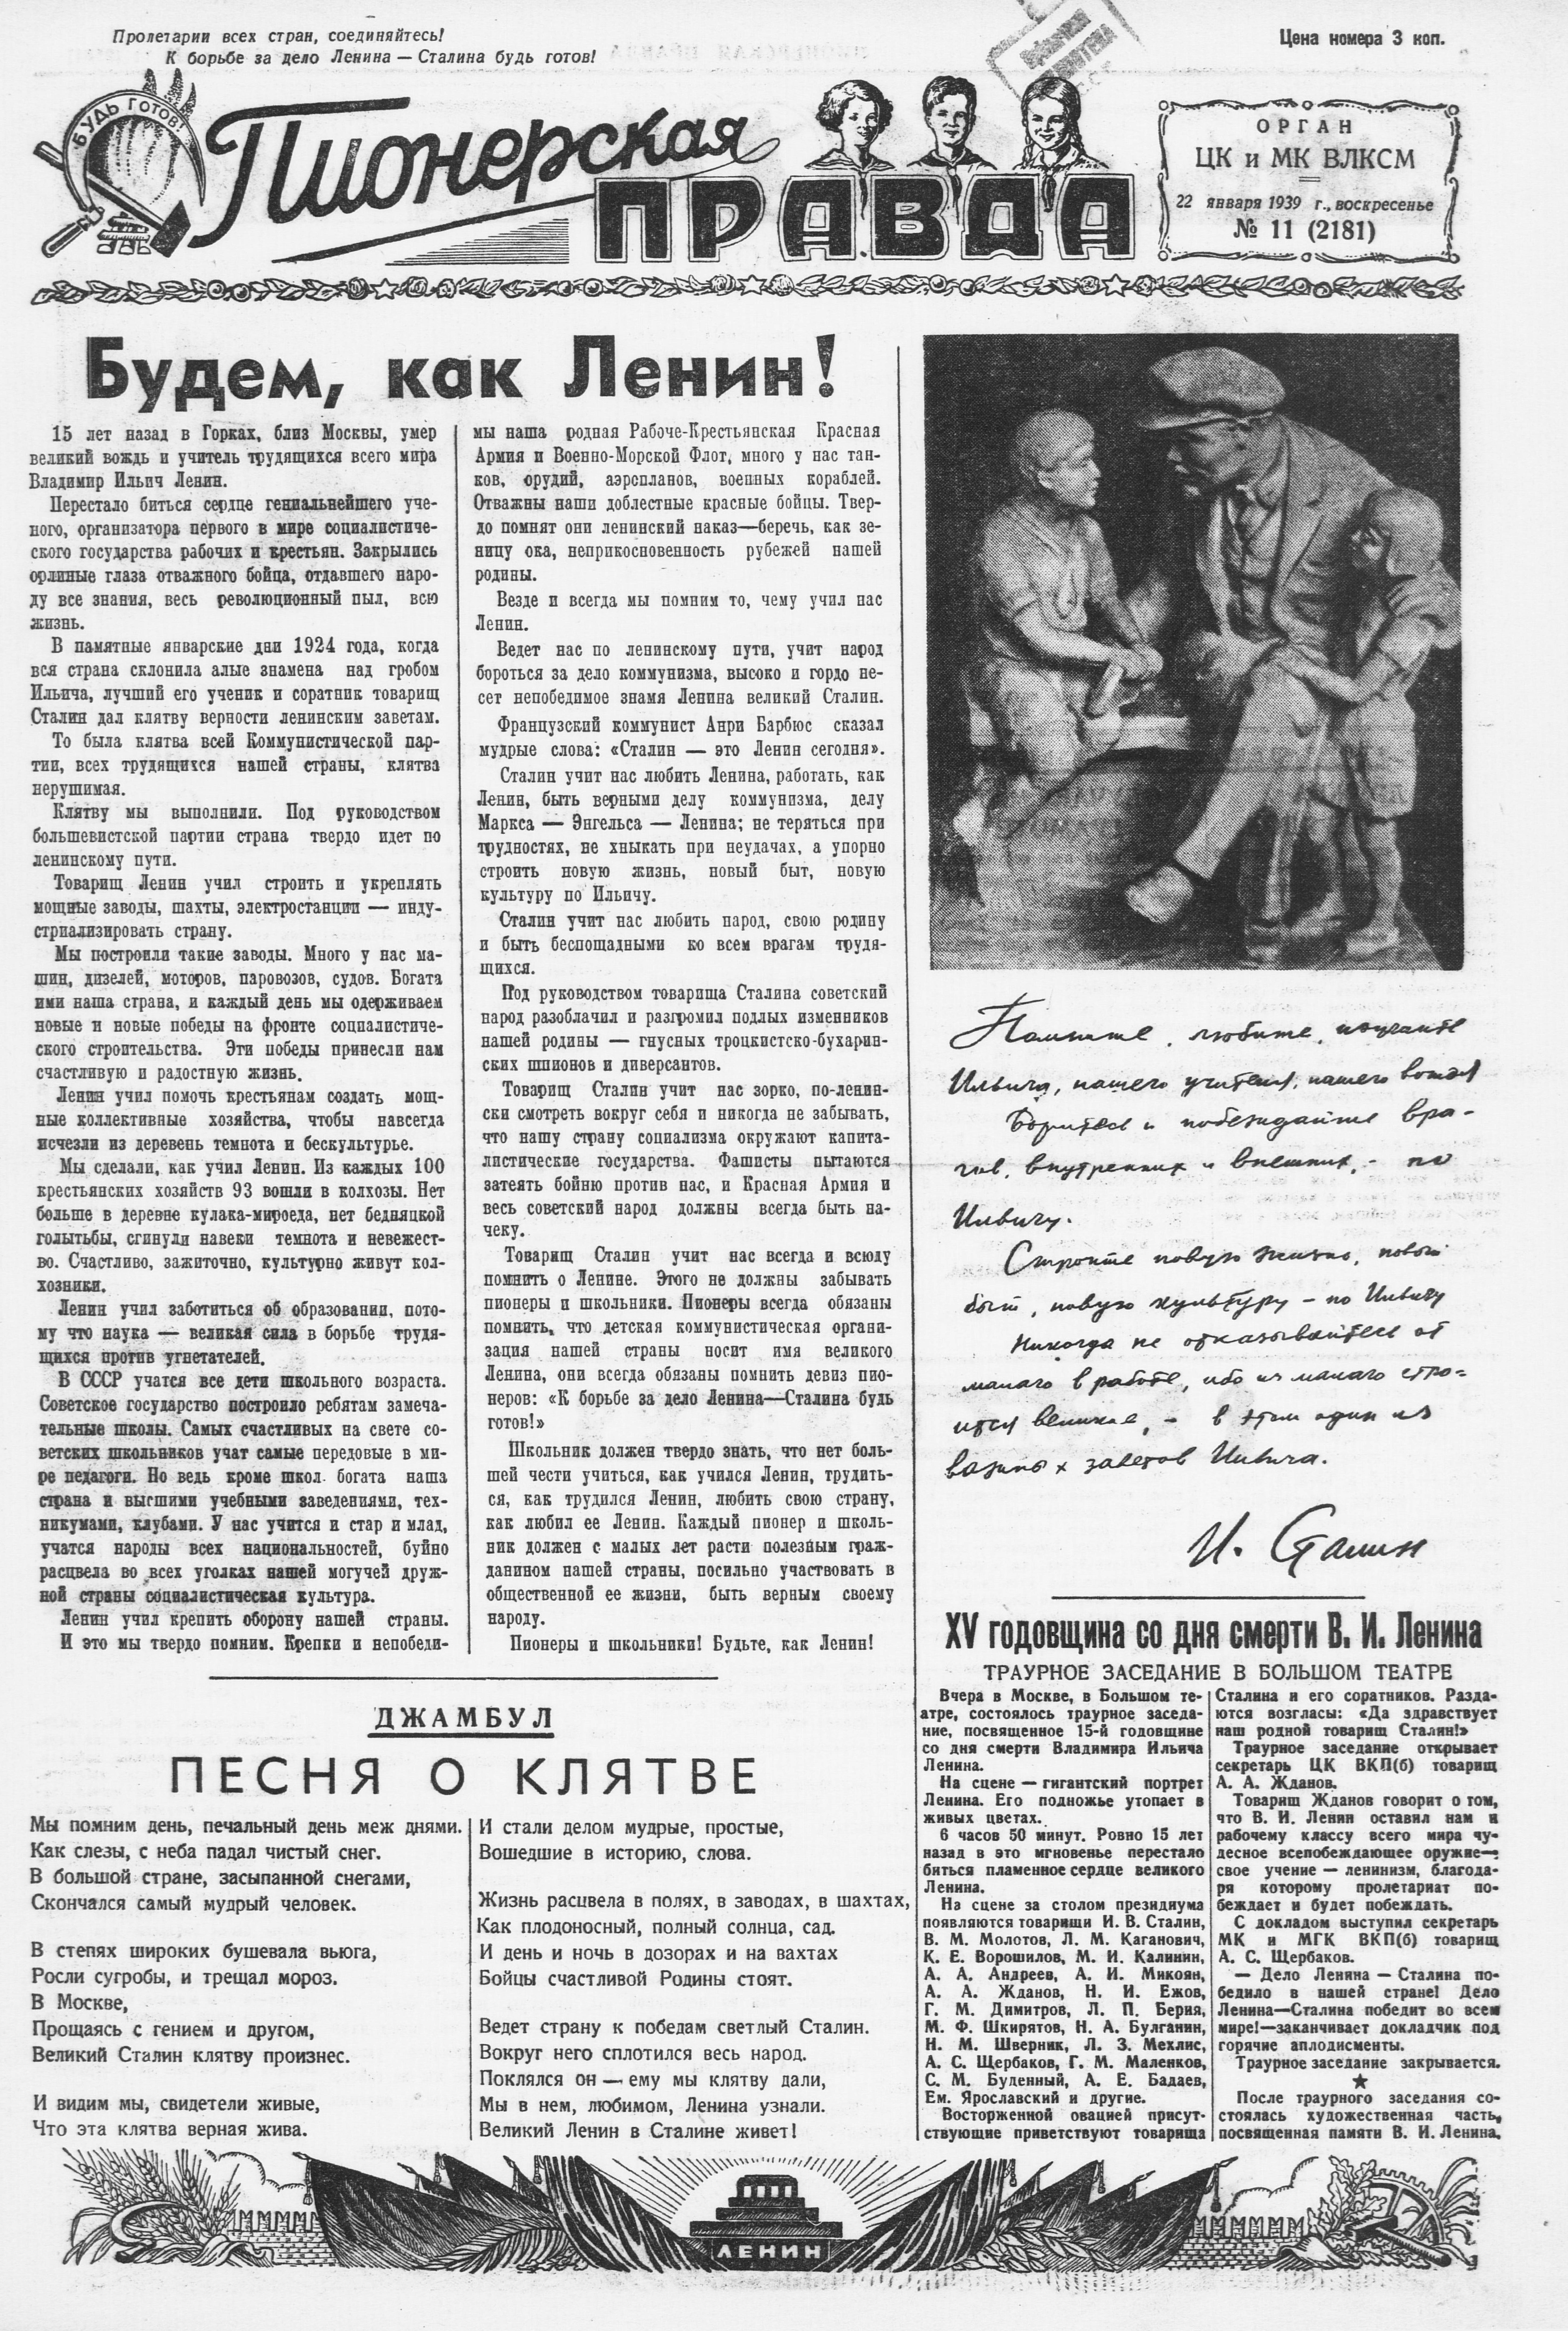 Пионерская правда. 1939. № 011 (2181): Орган ЦК и МК ВЛКСМ - 1939